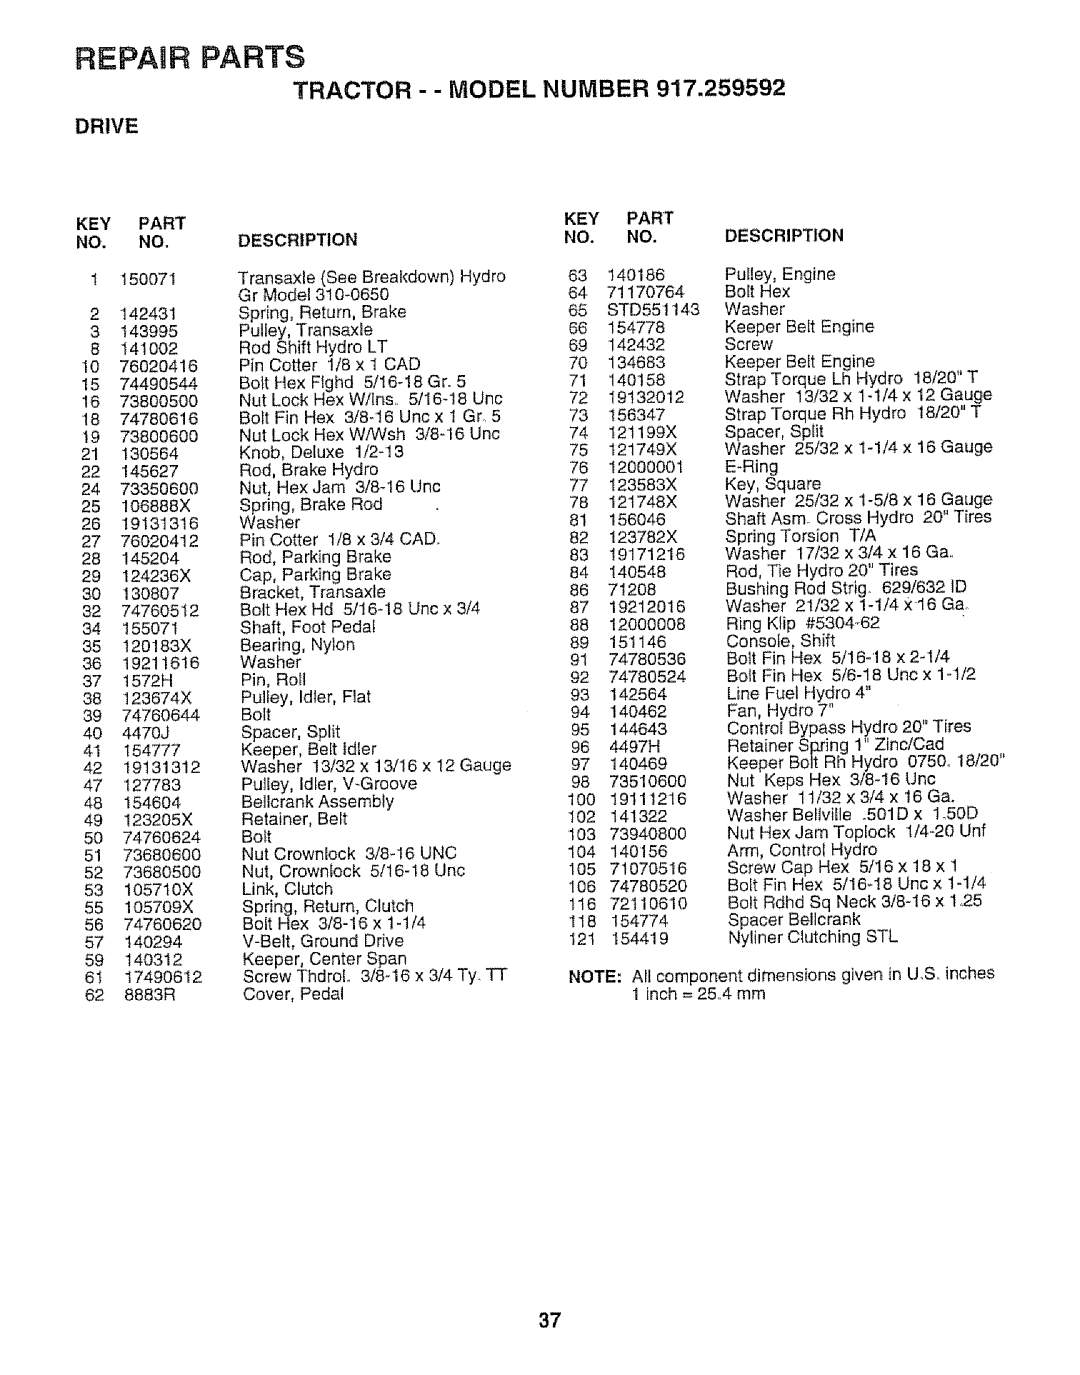 Craftsman 917.259592 owner manual REPAgR PARTS, 74780536, Tractor - - Model Number, Drive, Key Part No. No, Description 